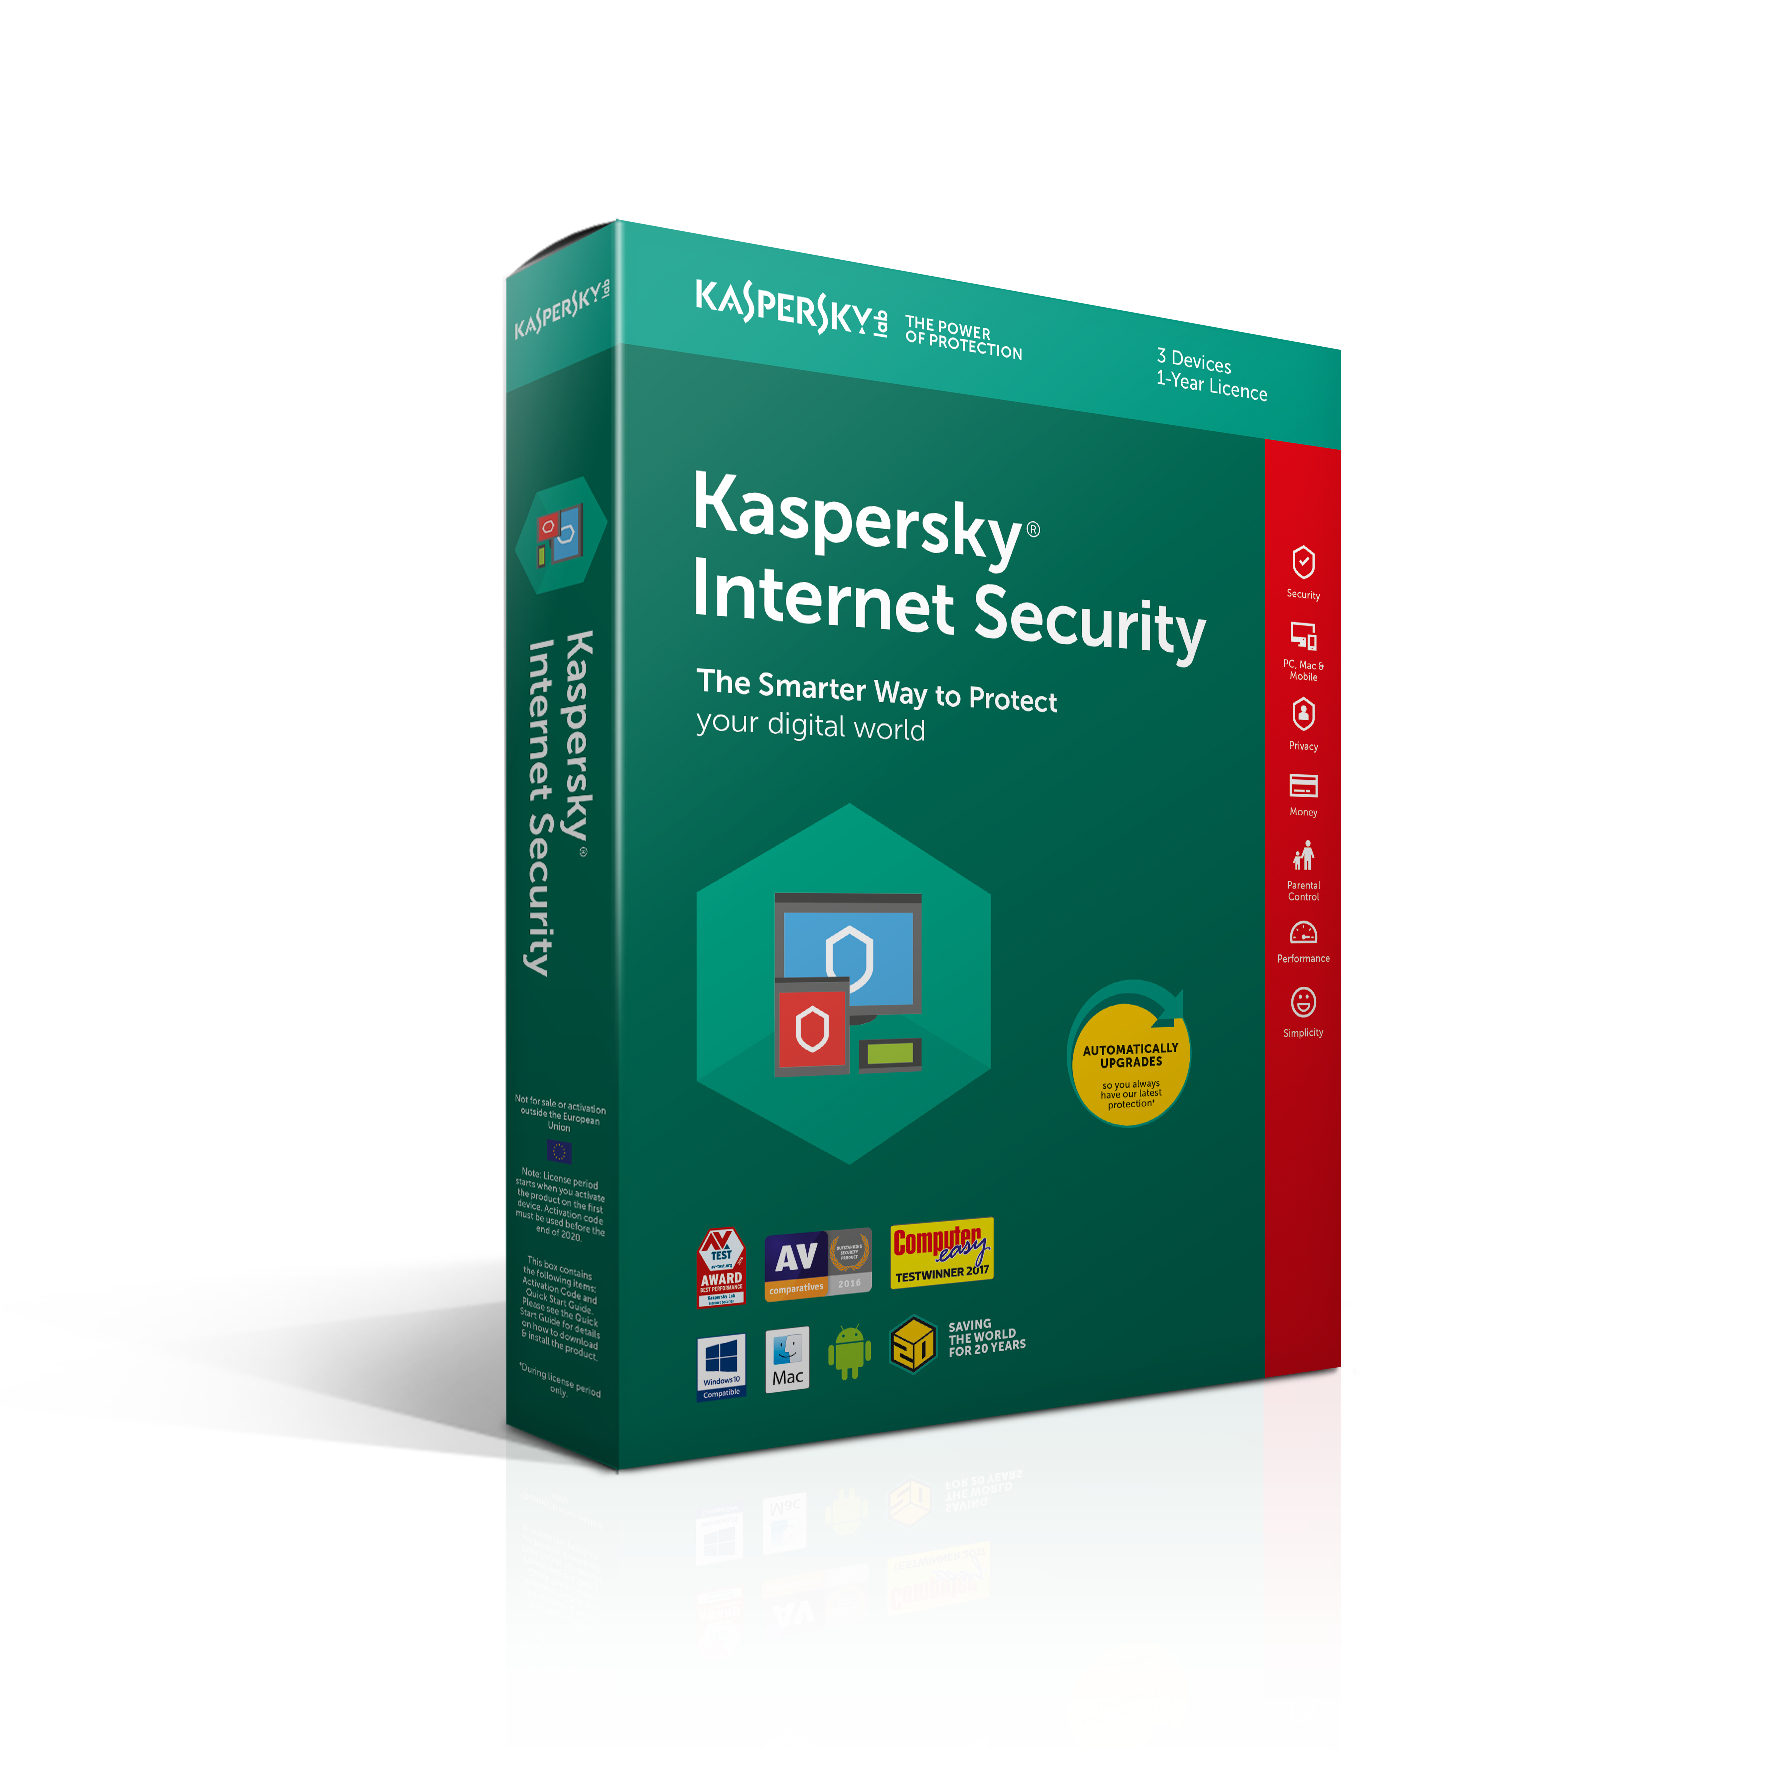 kaspersky internet security 2018 download offline